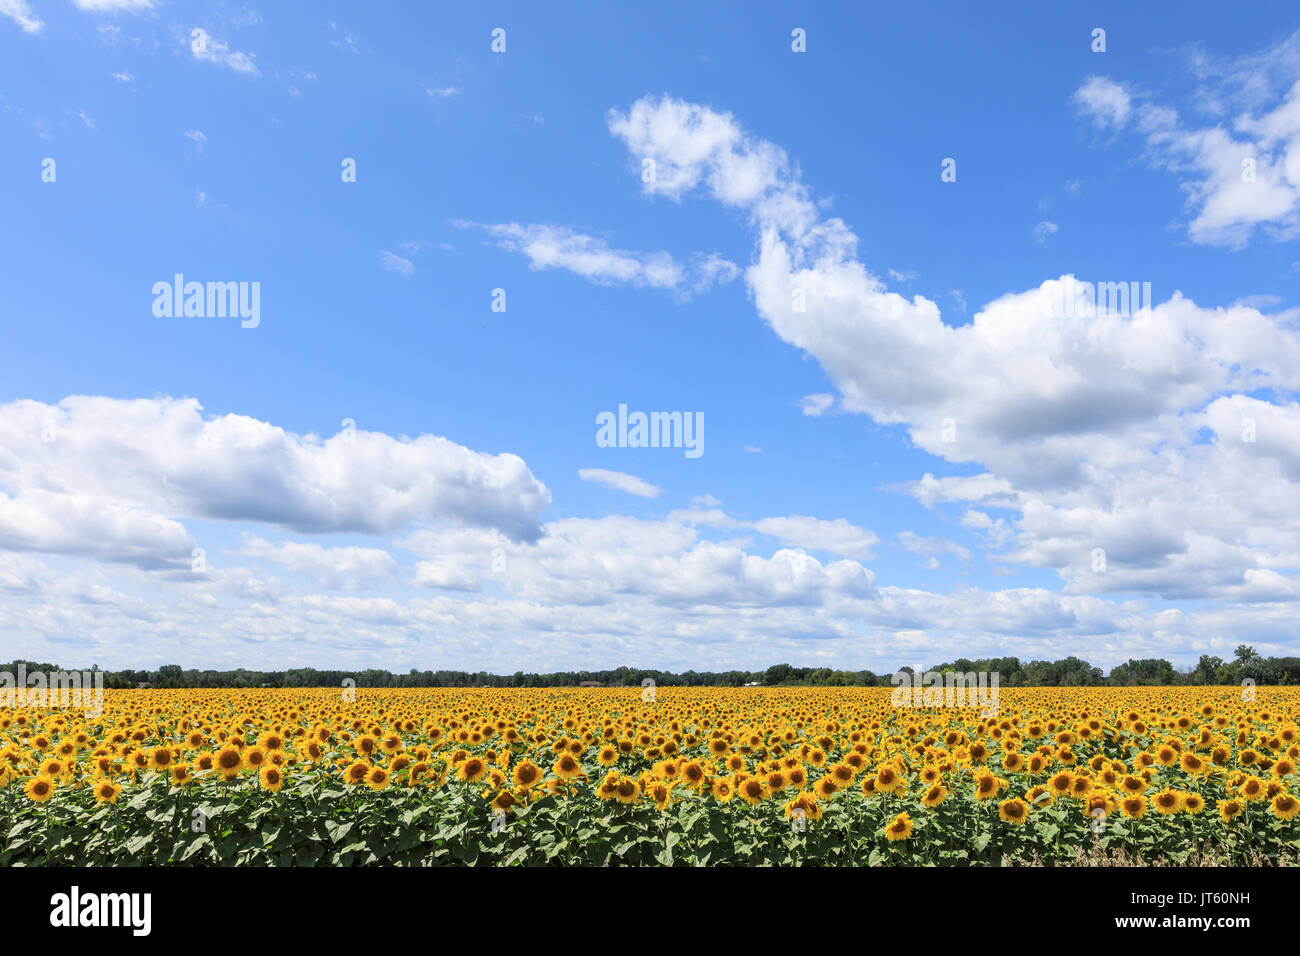 Ein Sonnenblumenfeld in voller Blüte, unter einem blauen Himmel mit weißen Wolken, Puffy Stockfoto